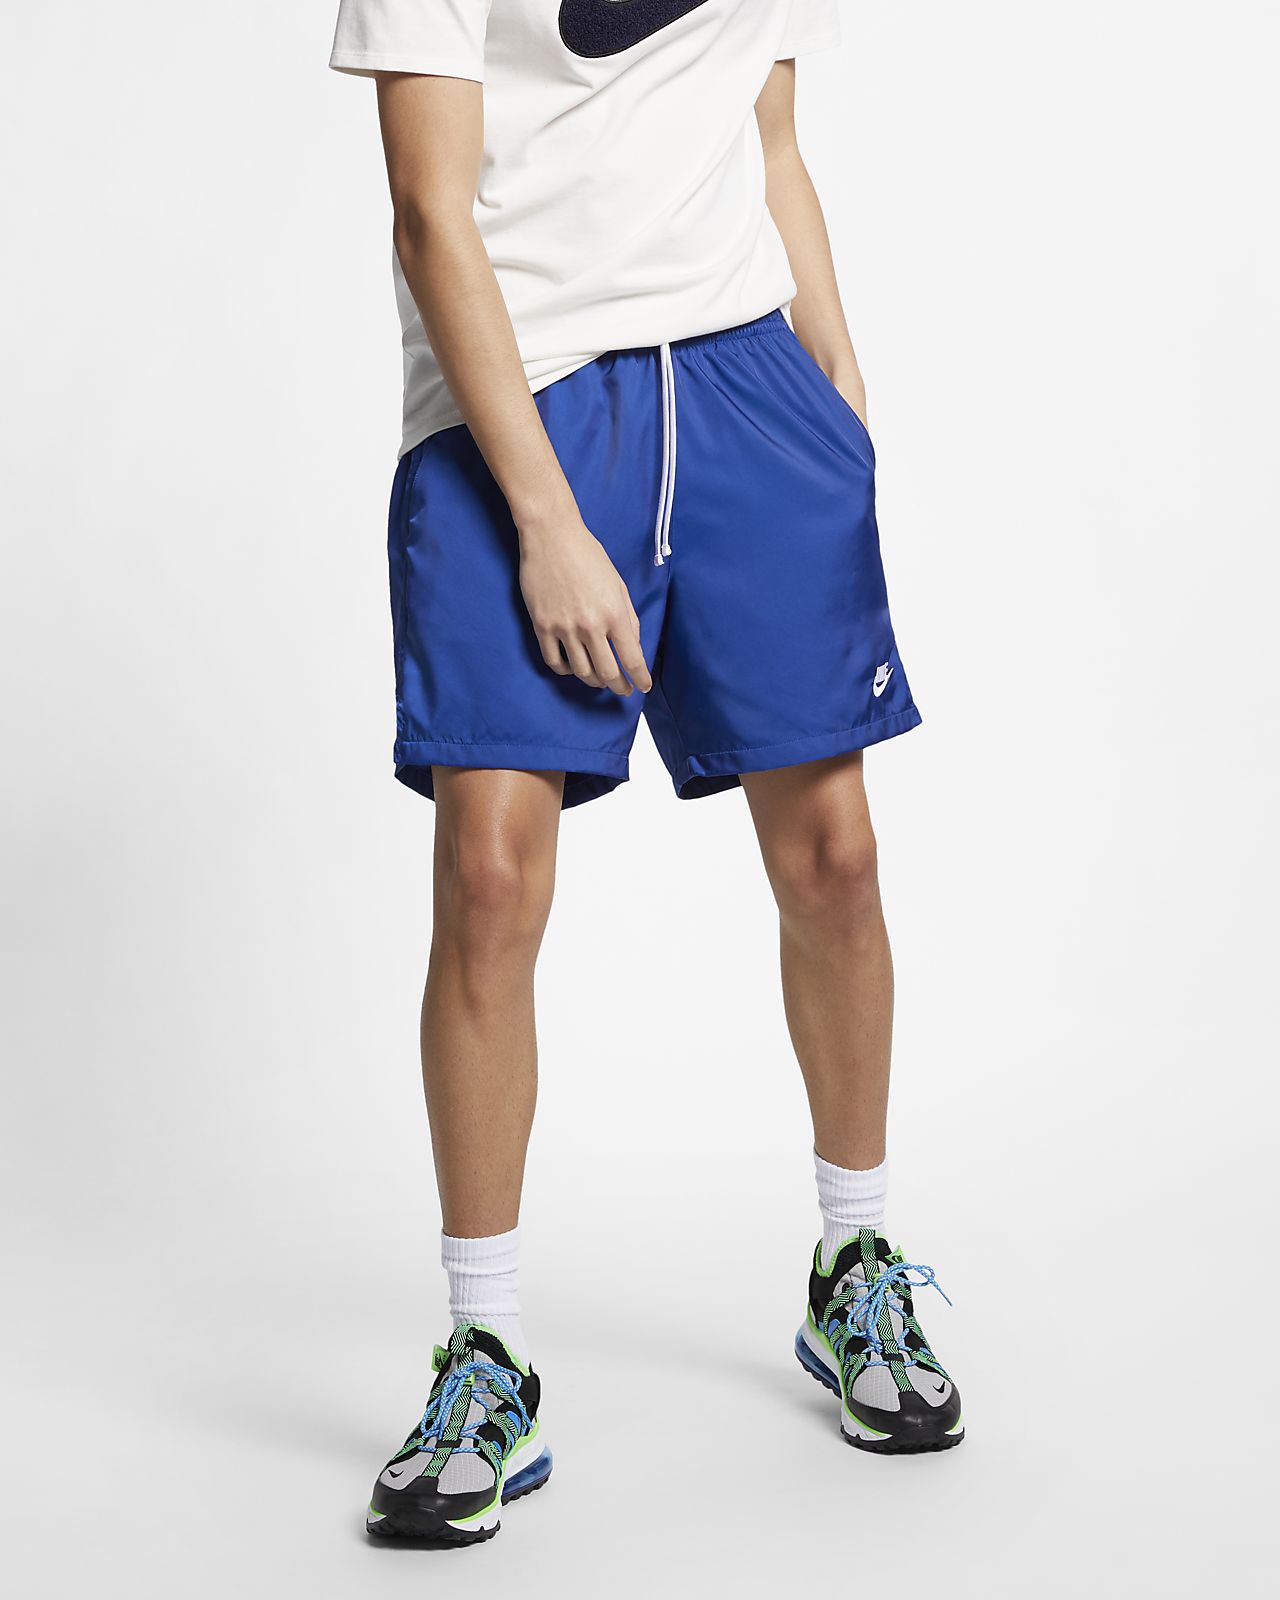 Nike Sportswear Men's Woven Shorts 